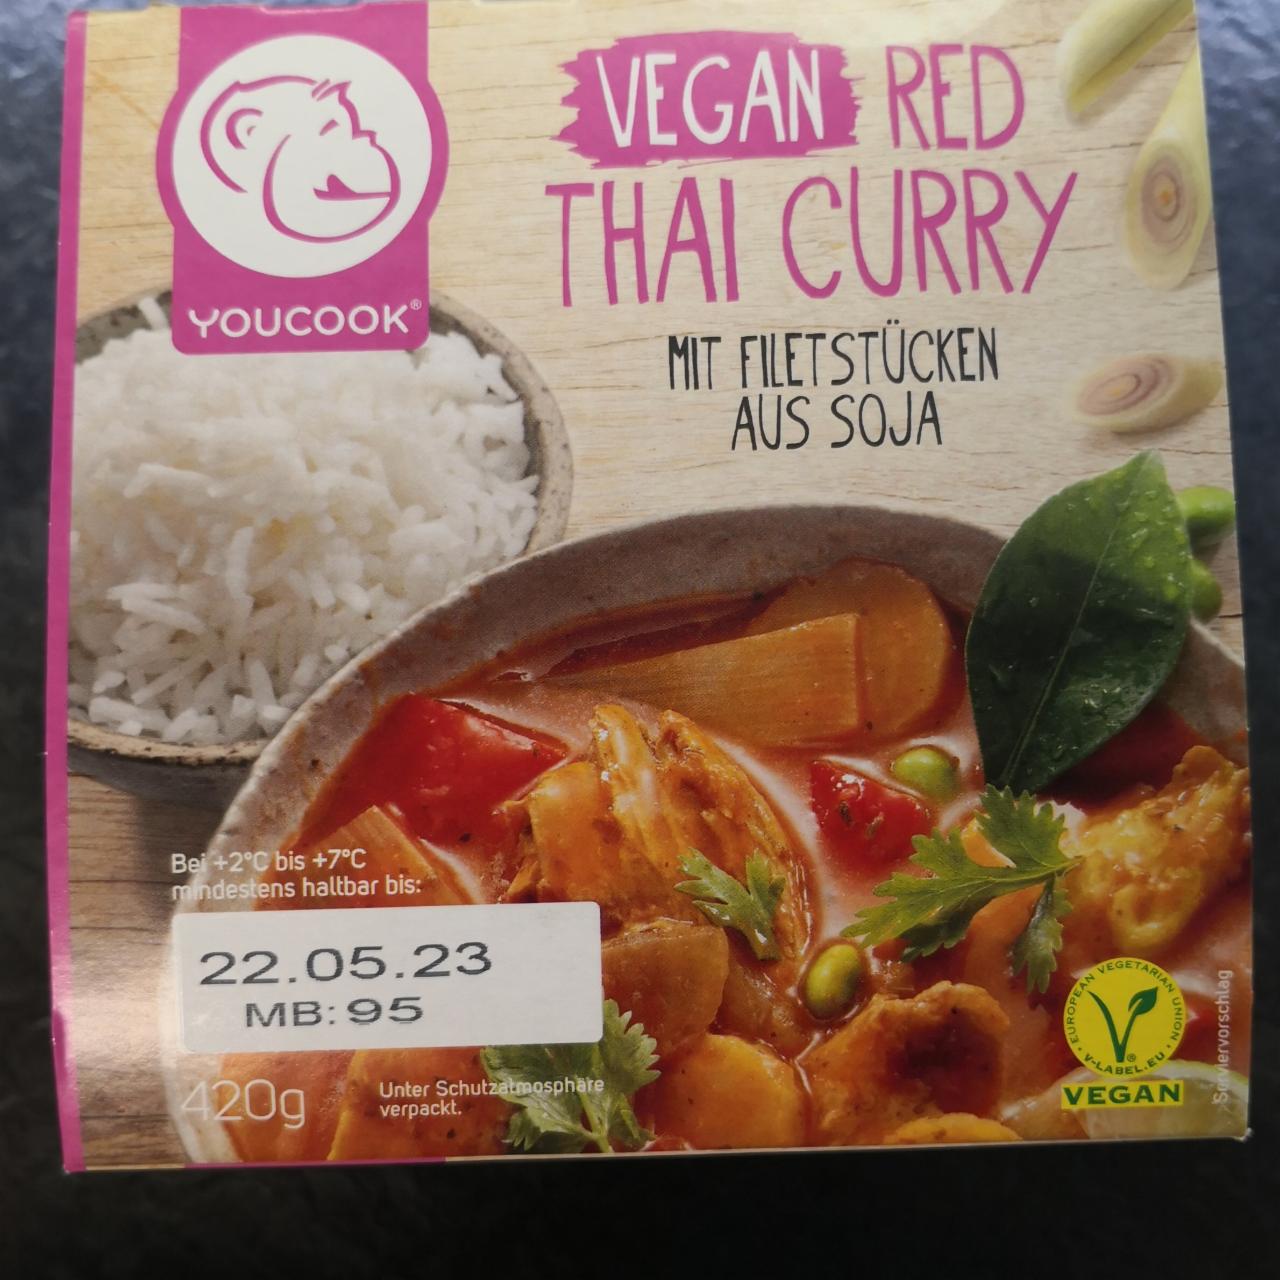 Fotografie - Vegan Red Thai Curry mit Filet stücken aus Soja Youcook